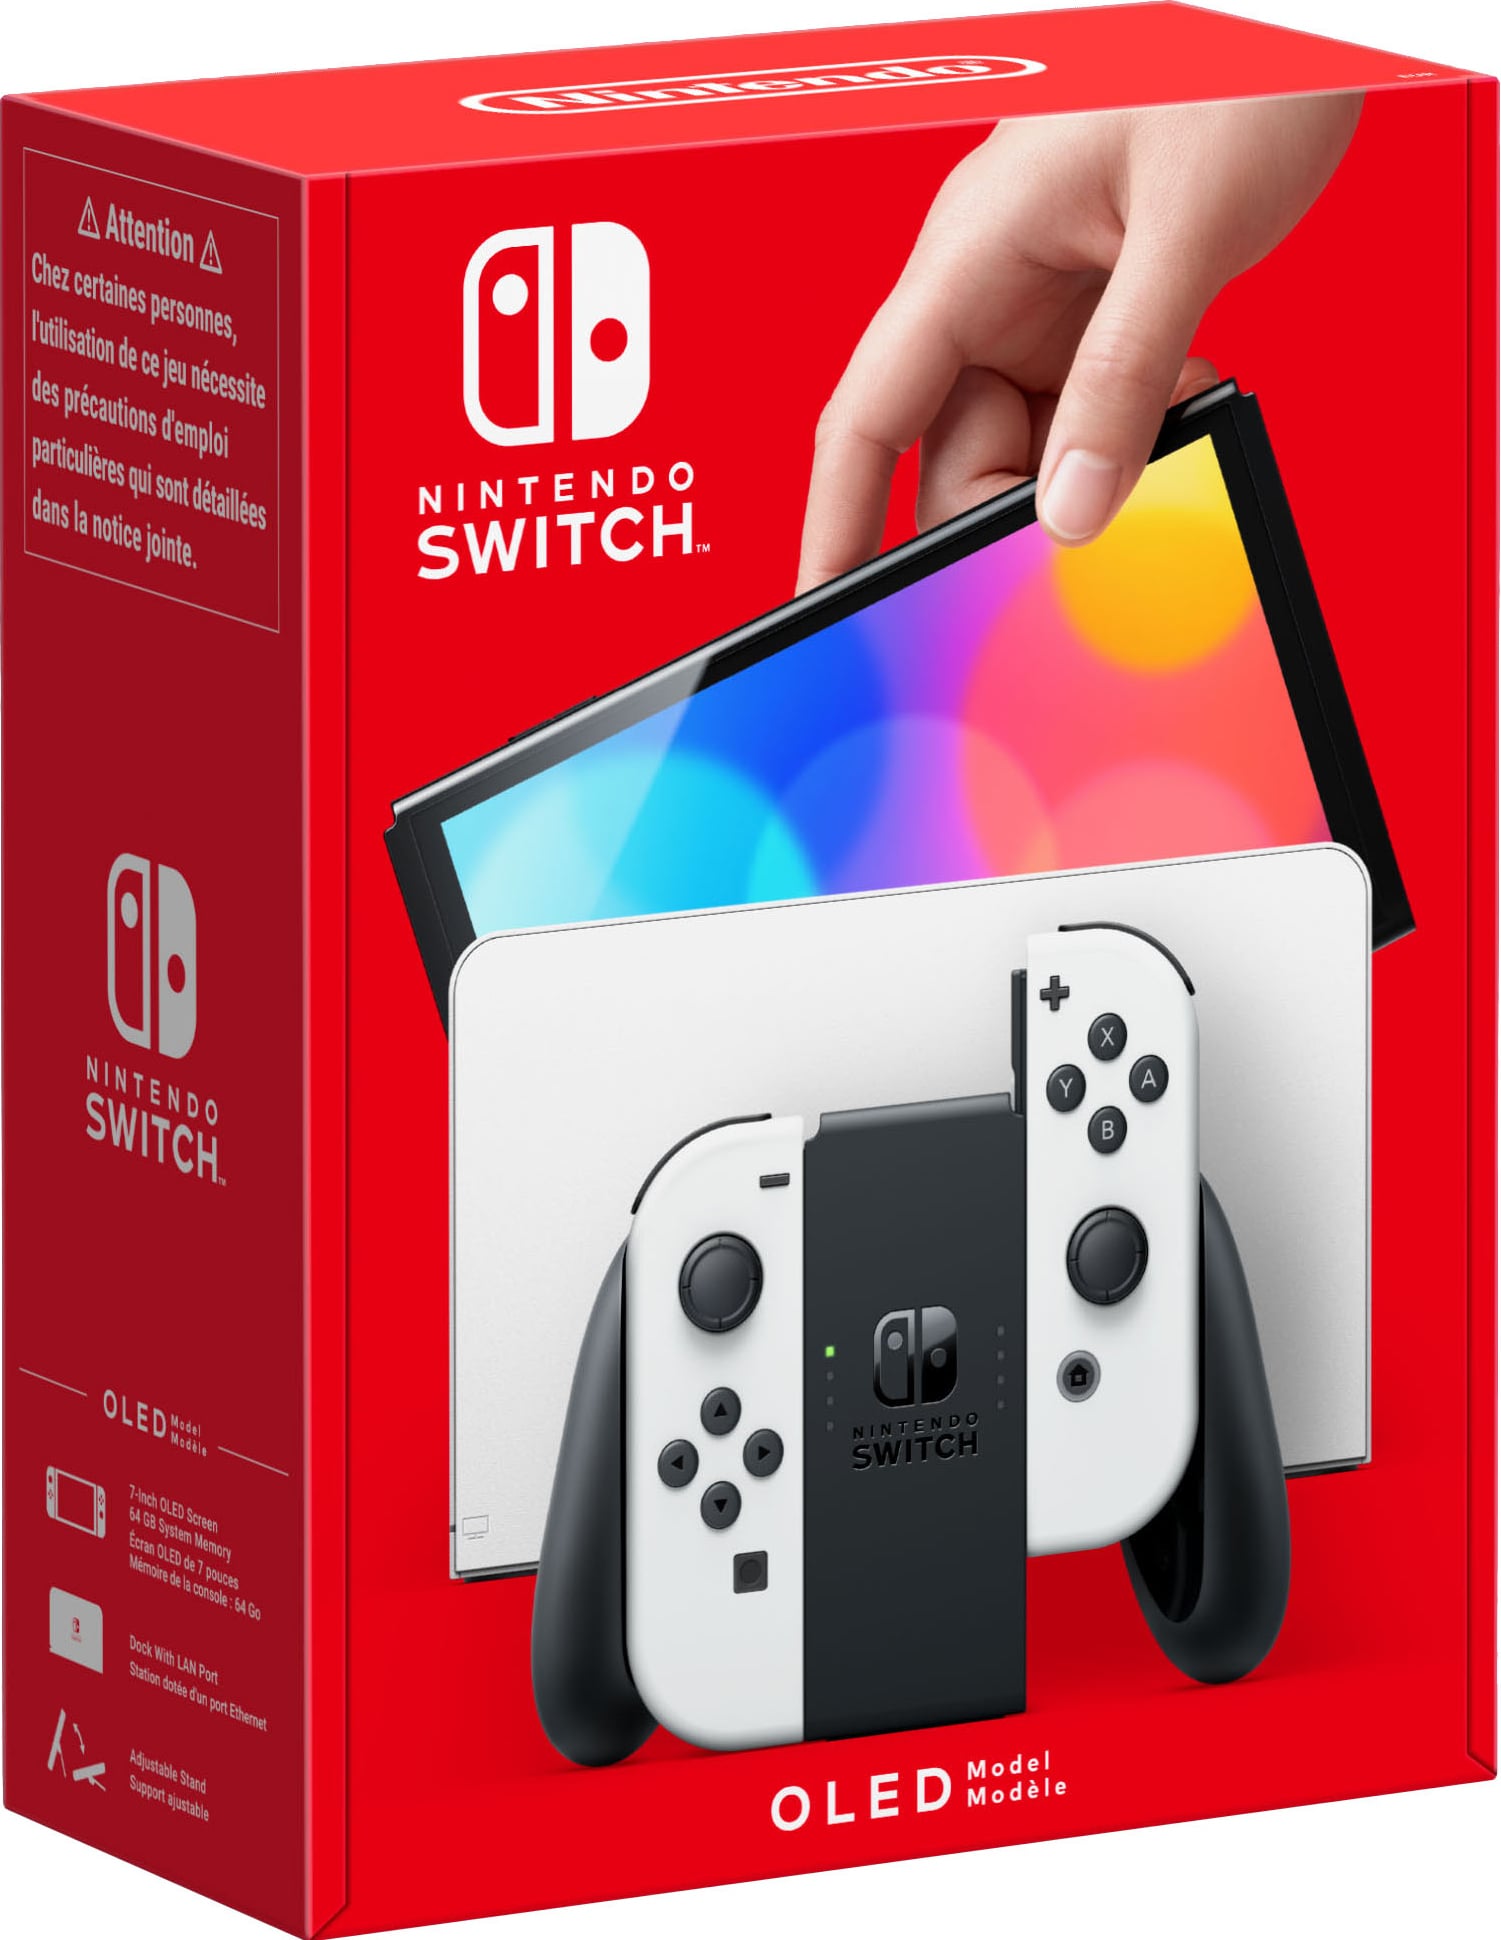 Nintendo Switch OLED spillekonsol med hvide Joy-Con controllere | Elgiganten